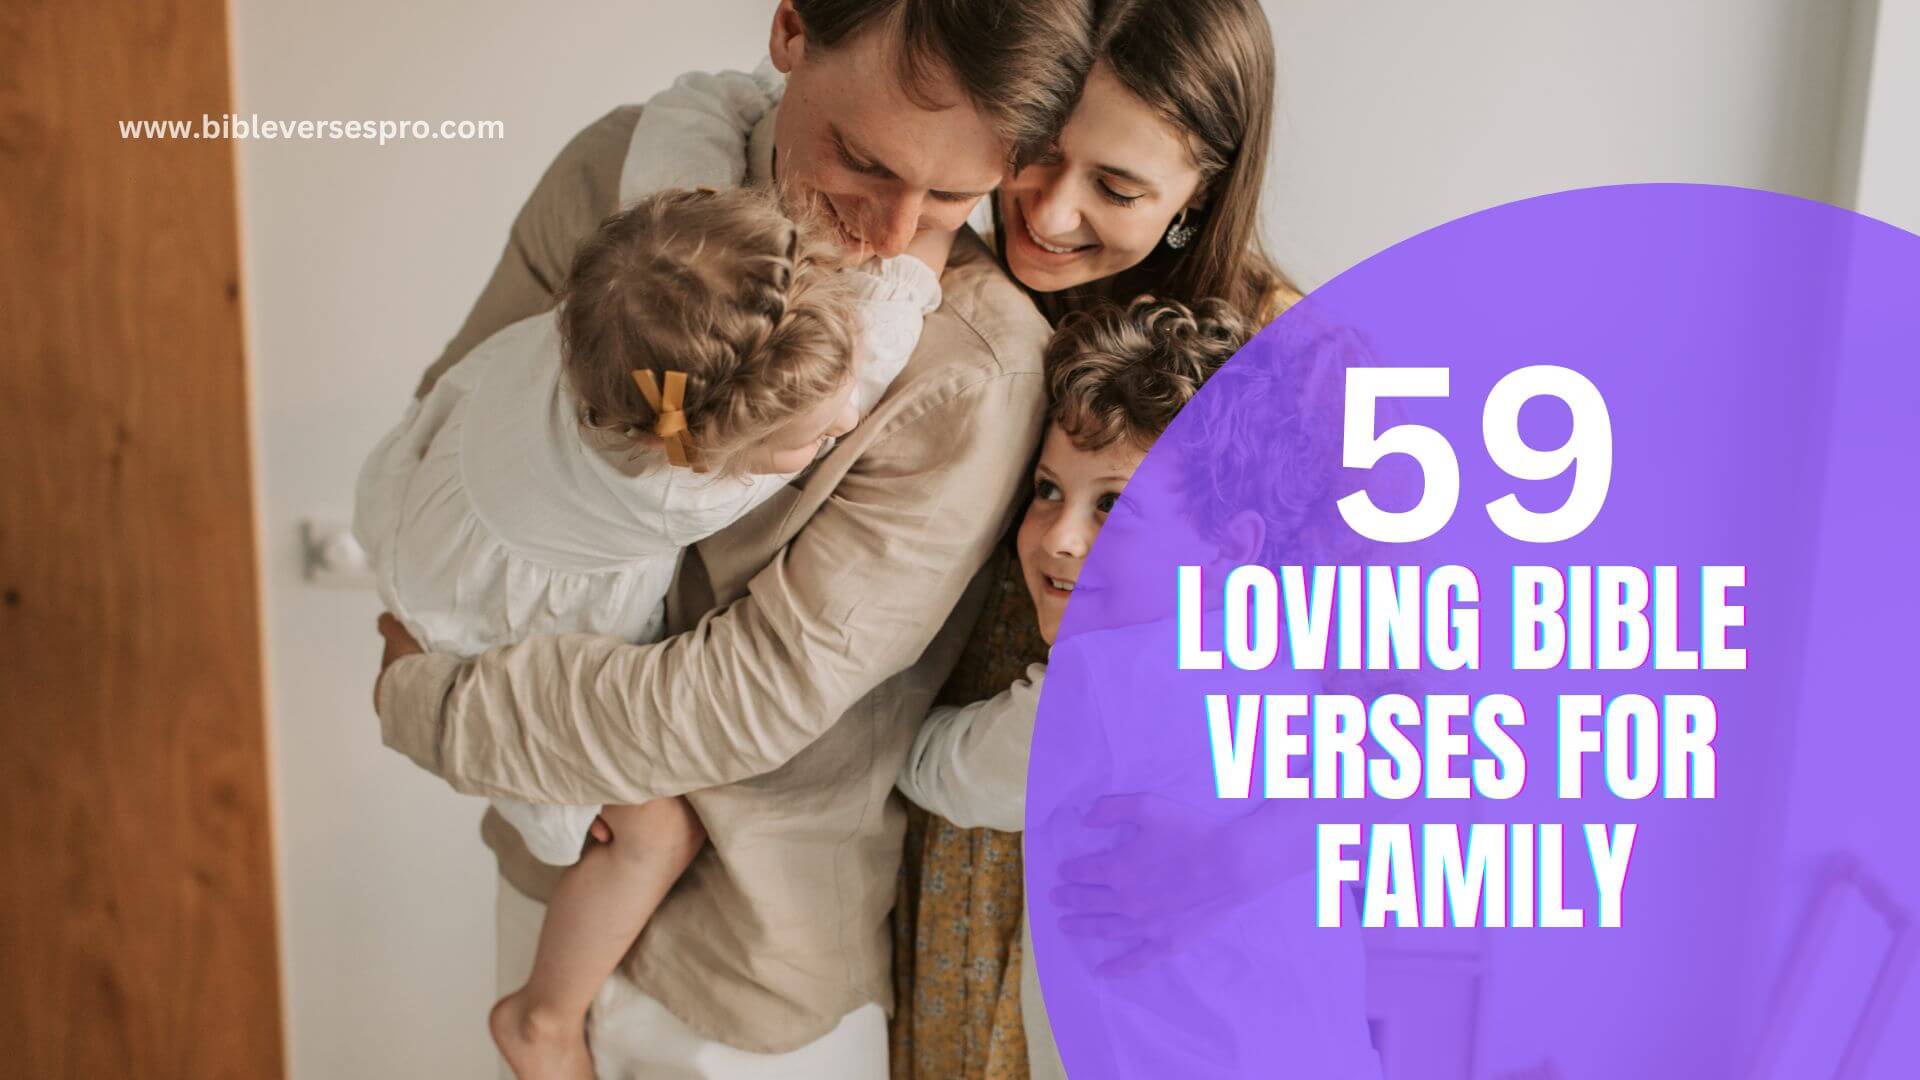 LOVING BIBLE VERSES FOR FAMILY (1)